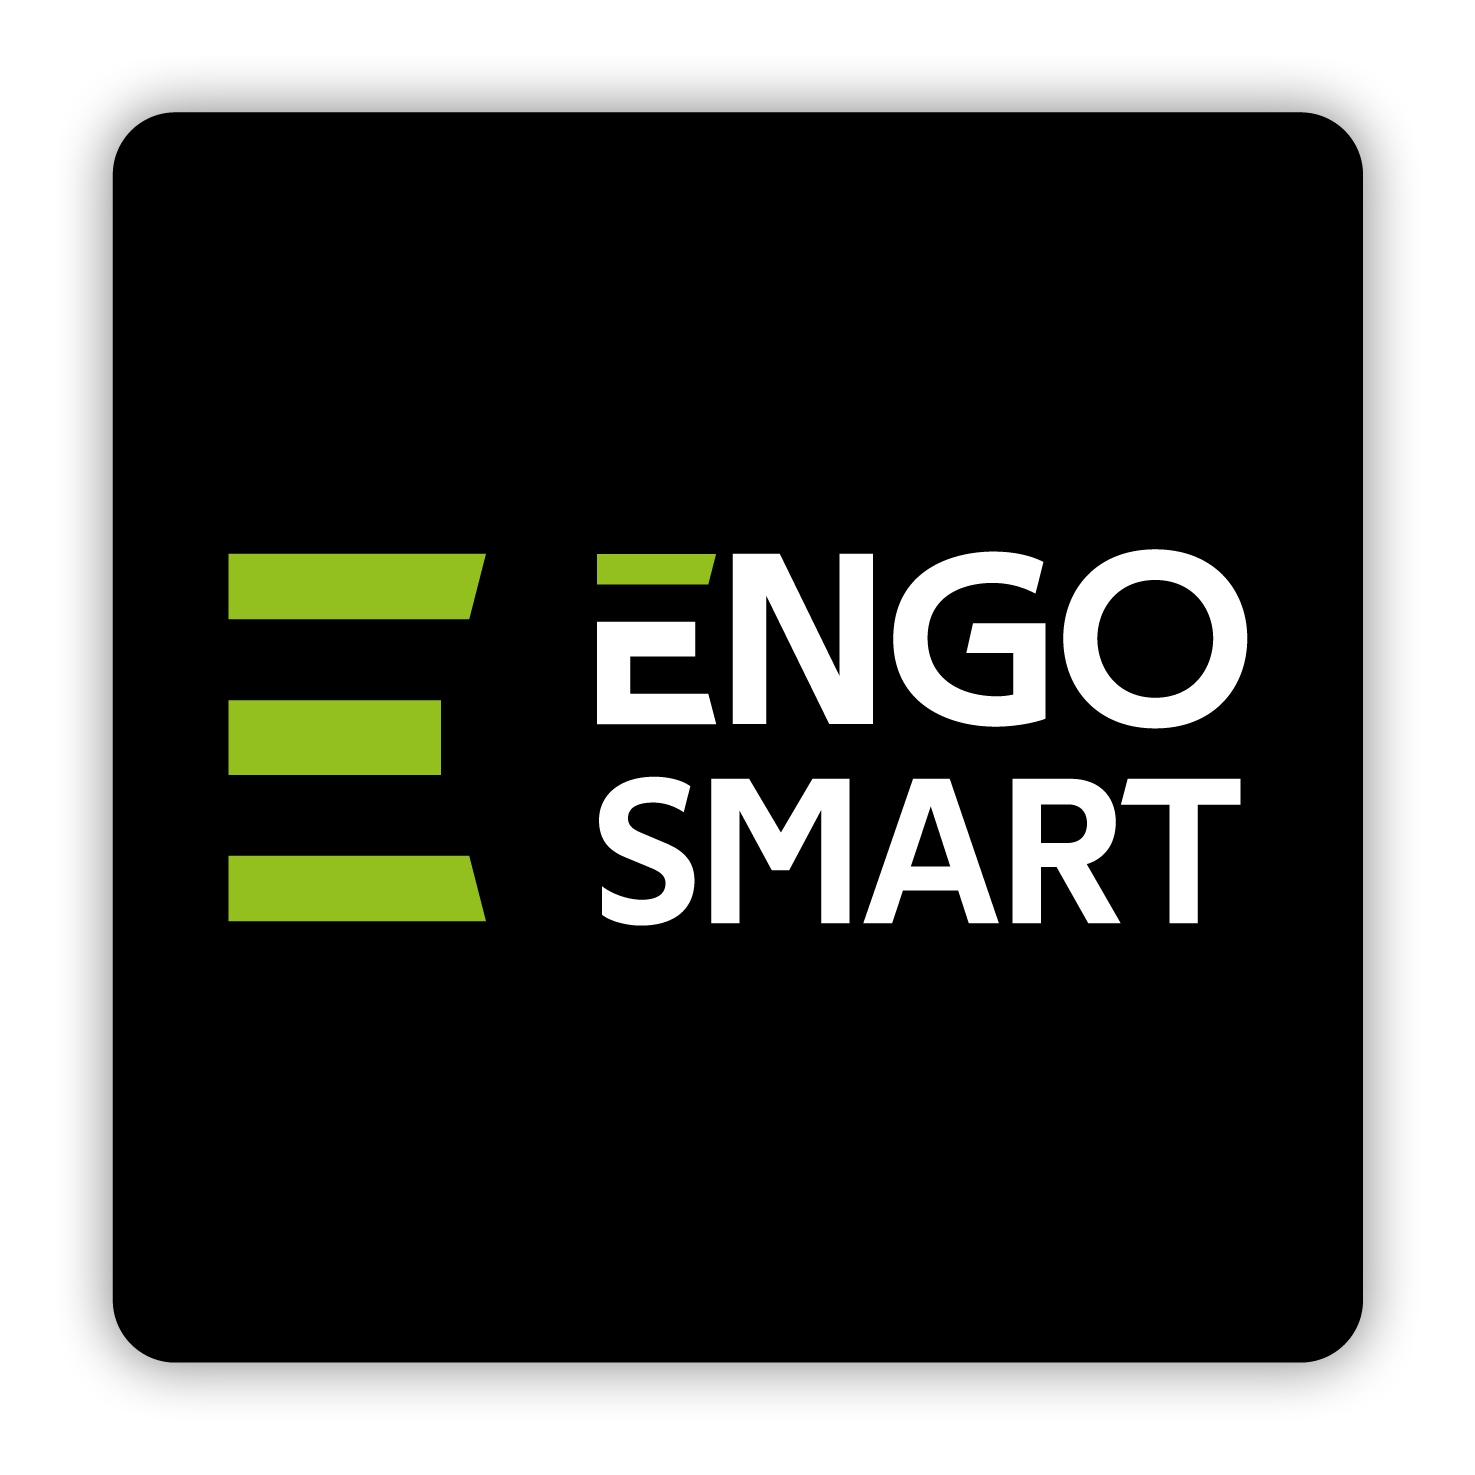 Engo Smart mobilā aplikācija - ENGO Smart